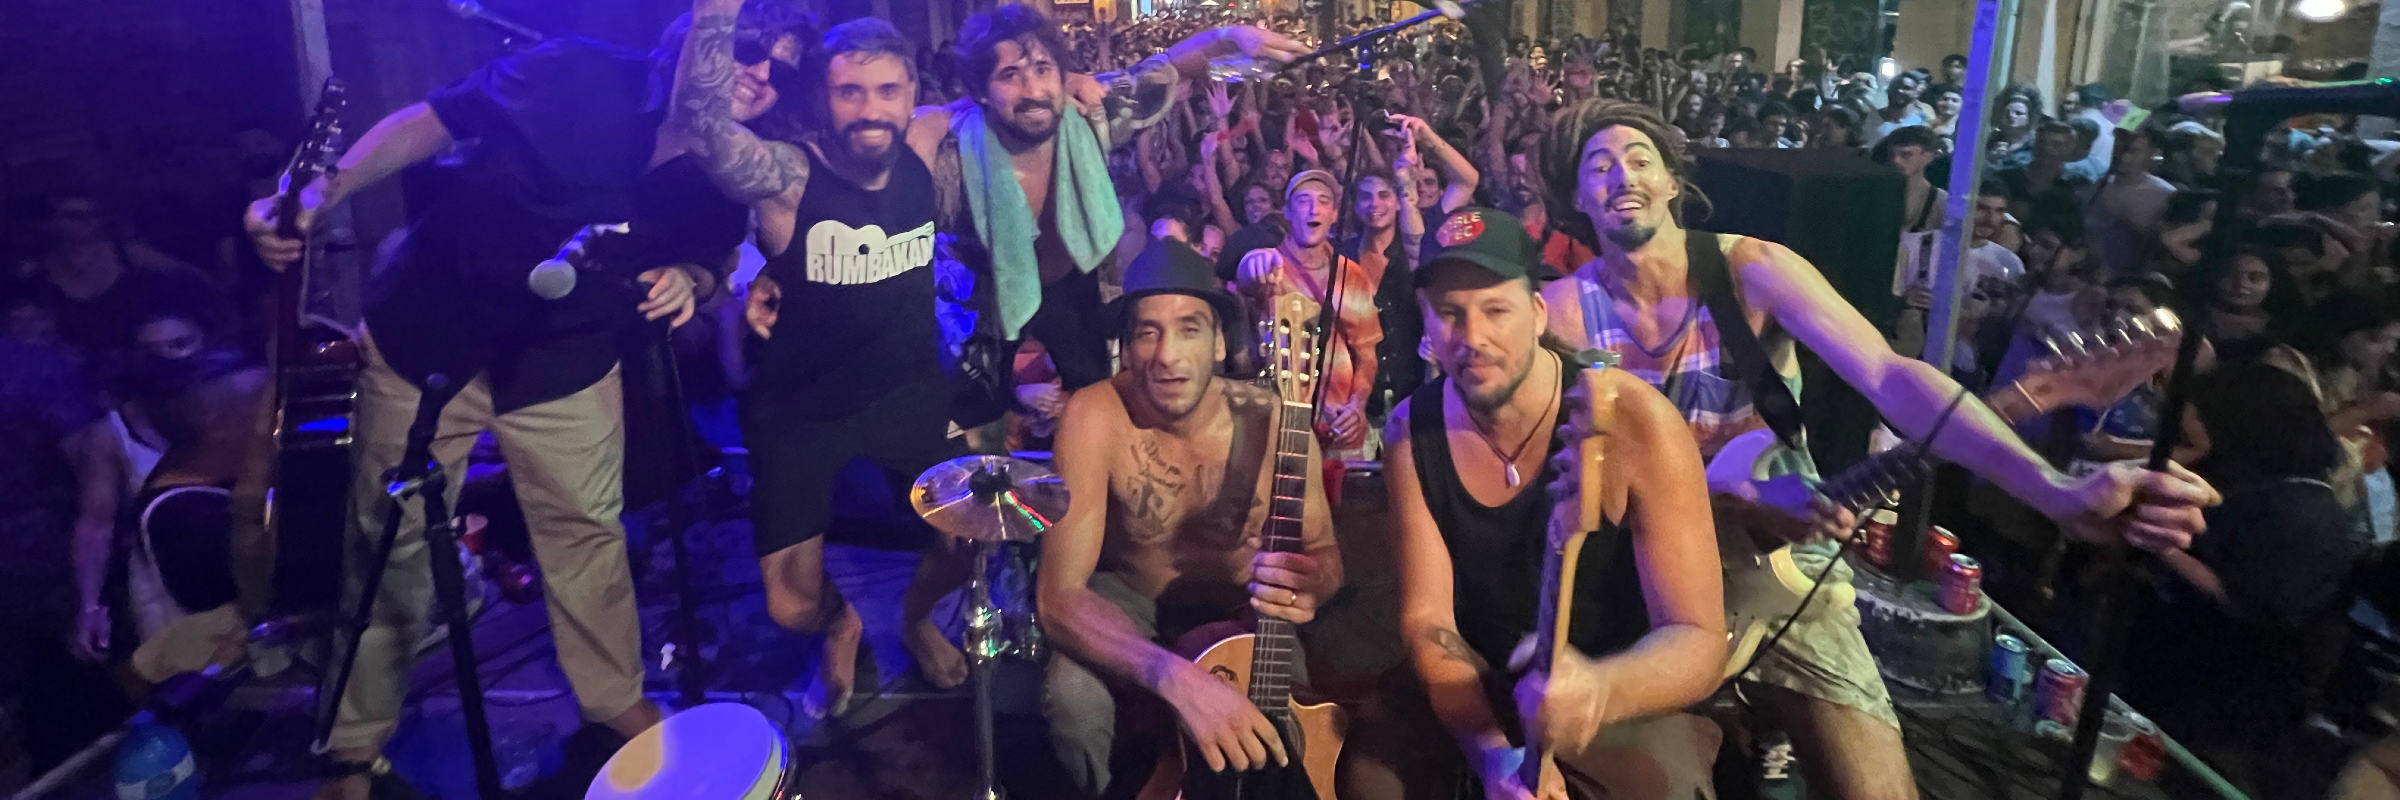 Rumbakana, groupe de musique Gypsy en représentation à Pyrénées Orientales - photo de couverture